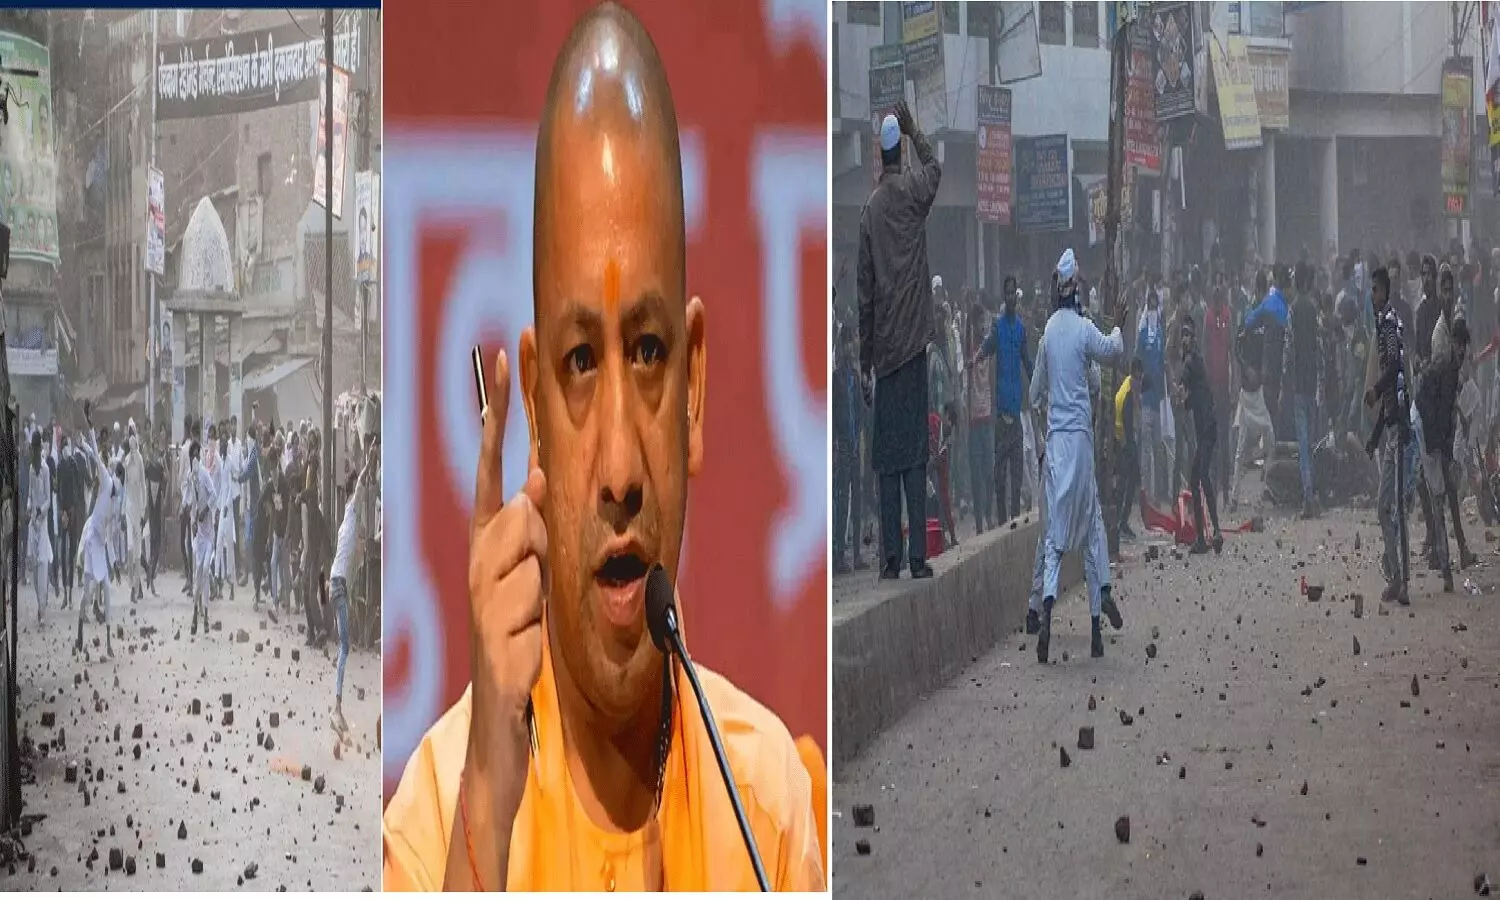 कानपुर हिंसा: एक हज़ार लोगों पर मामला दर्ज, इस्लामिक कट्टरपंथी संगठन PFI की साजिश के तहत मुसलमानों ने किया बवाल!